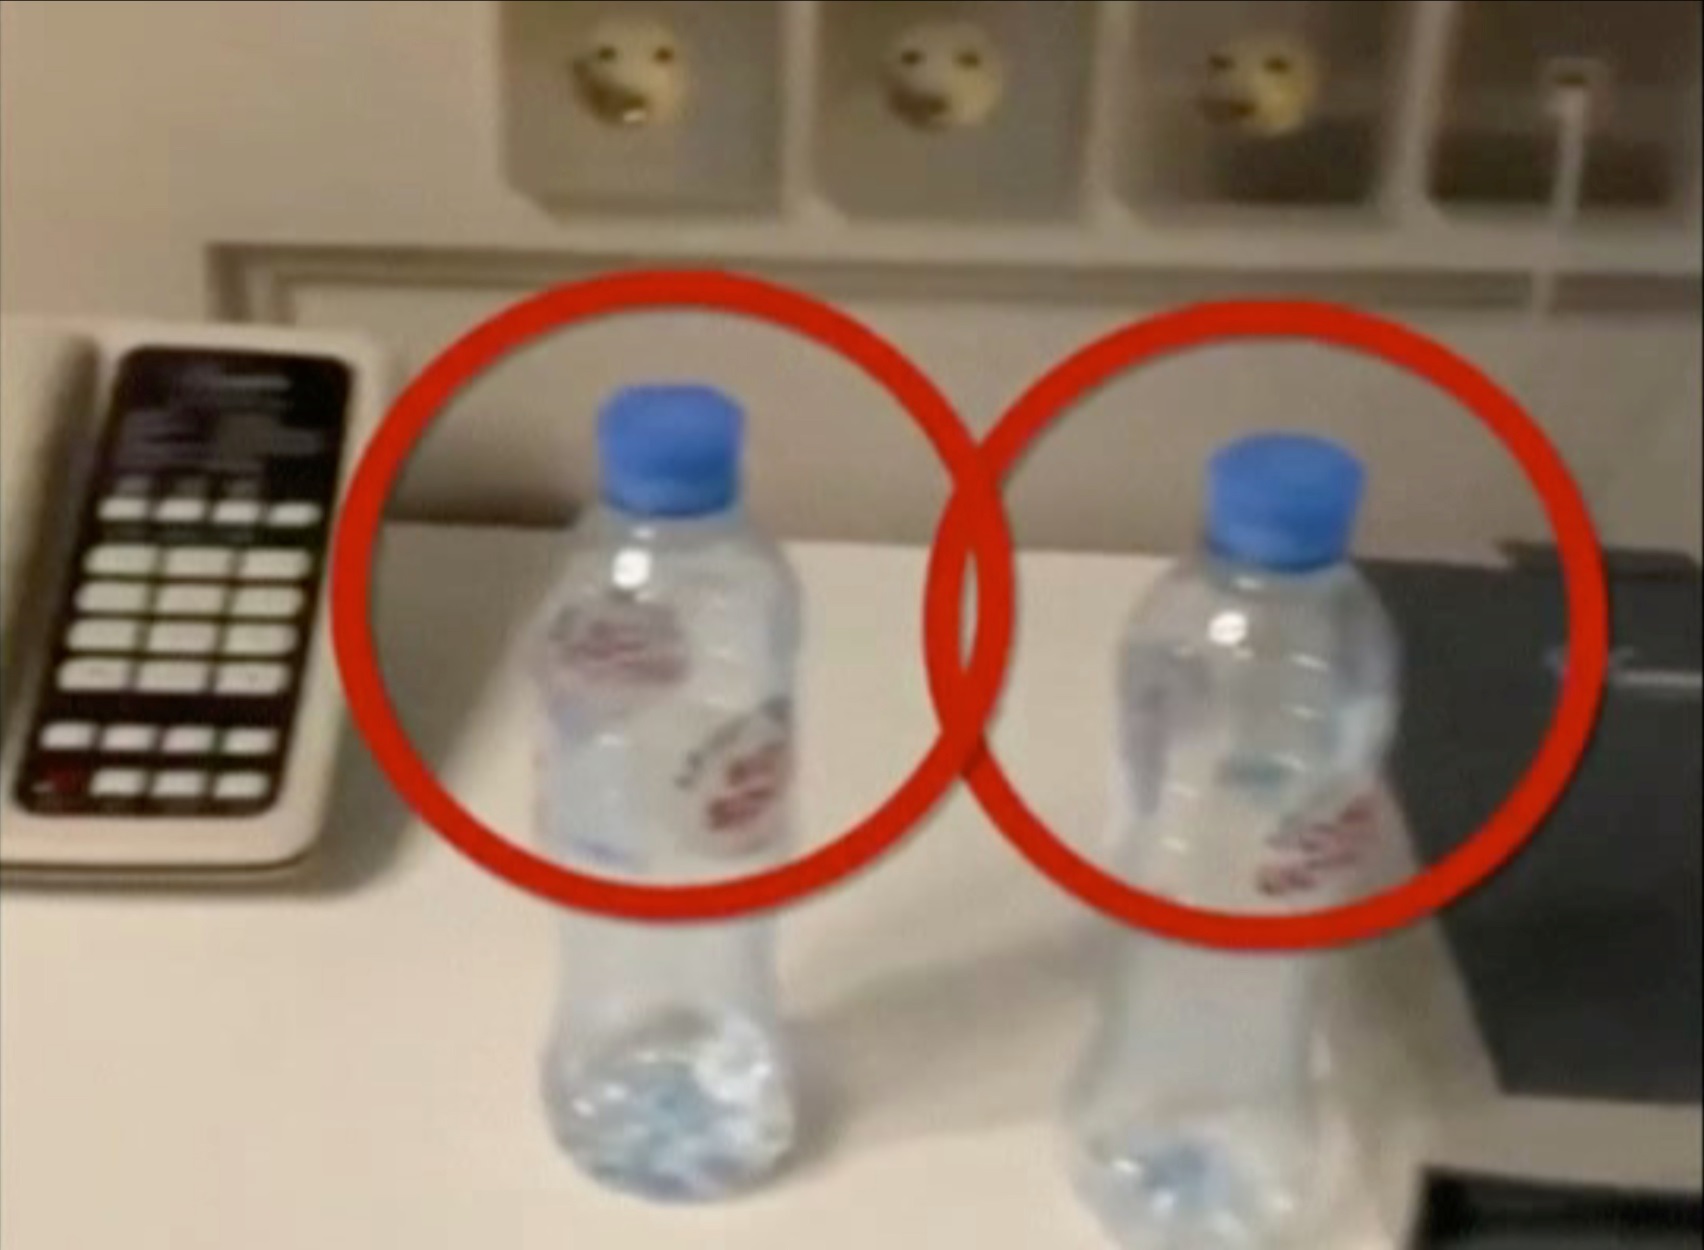 Υπόθεση Ναβάλνι: Το Κρεμλίνο δεν δέχεται ως αποδεικτικό στοιχείο το μπουκάλι νερού (pics)